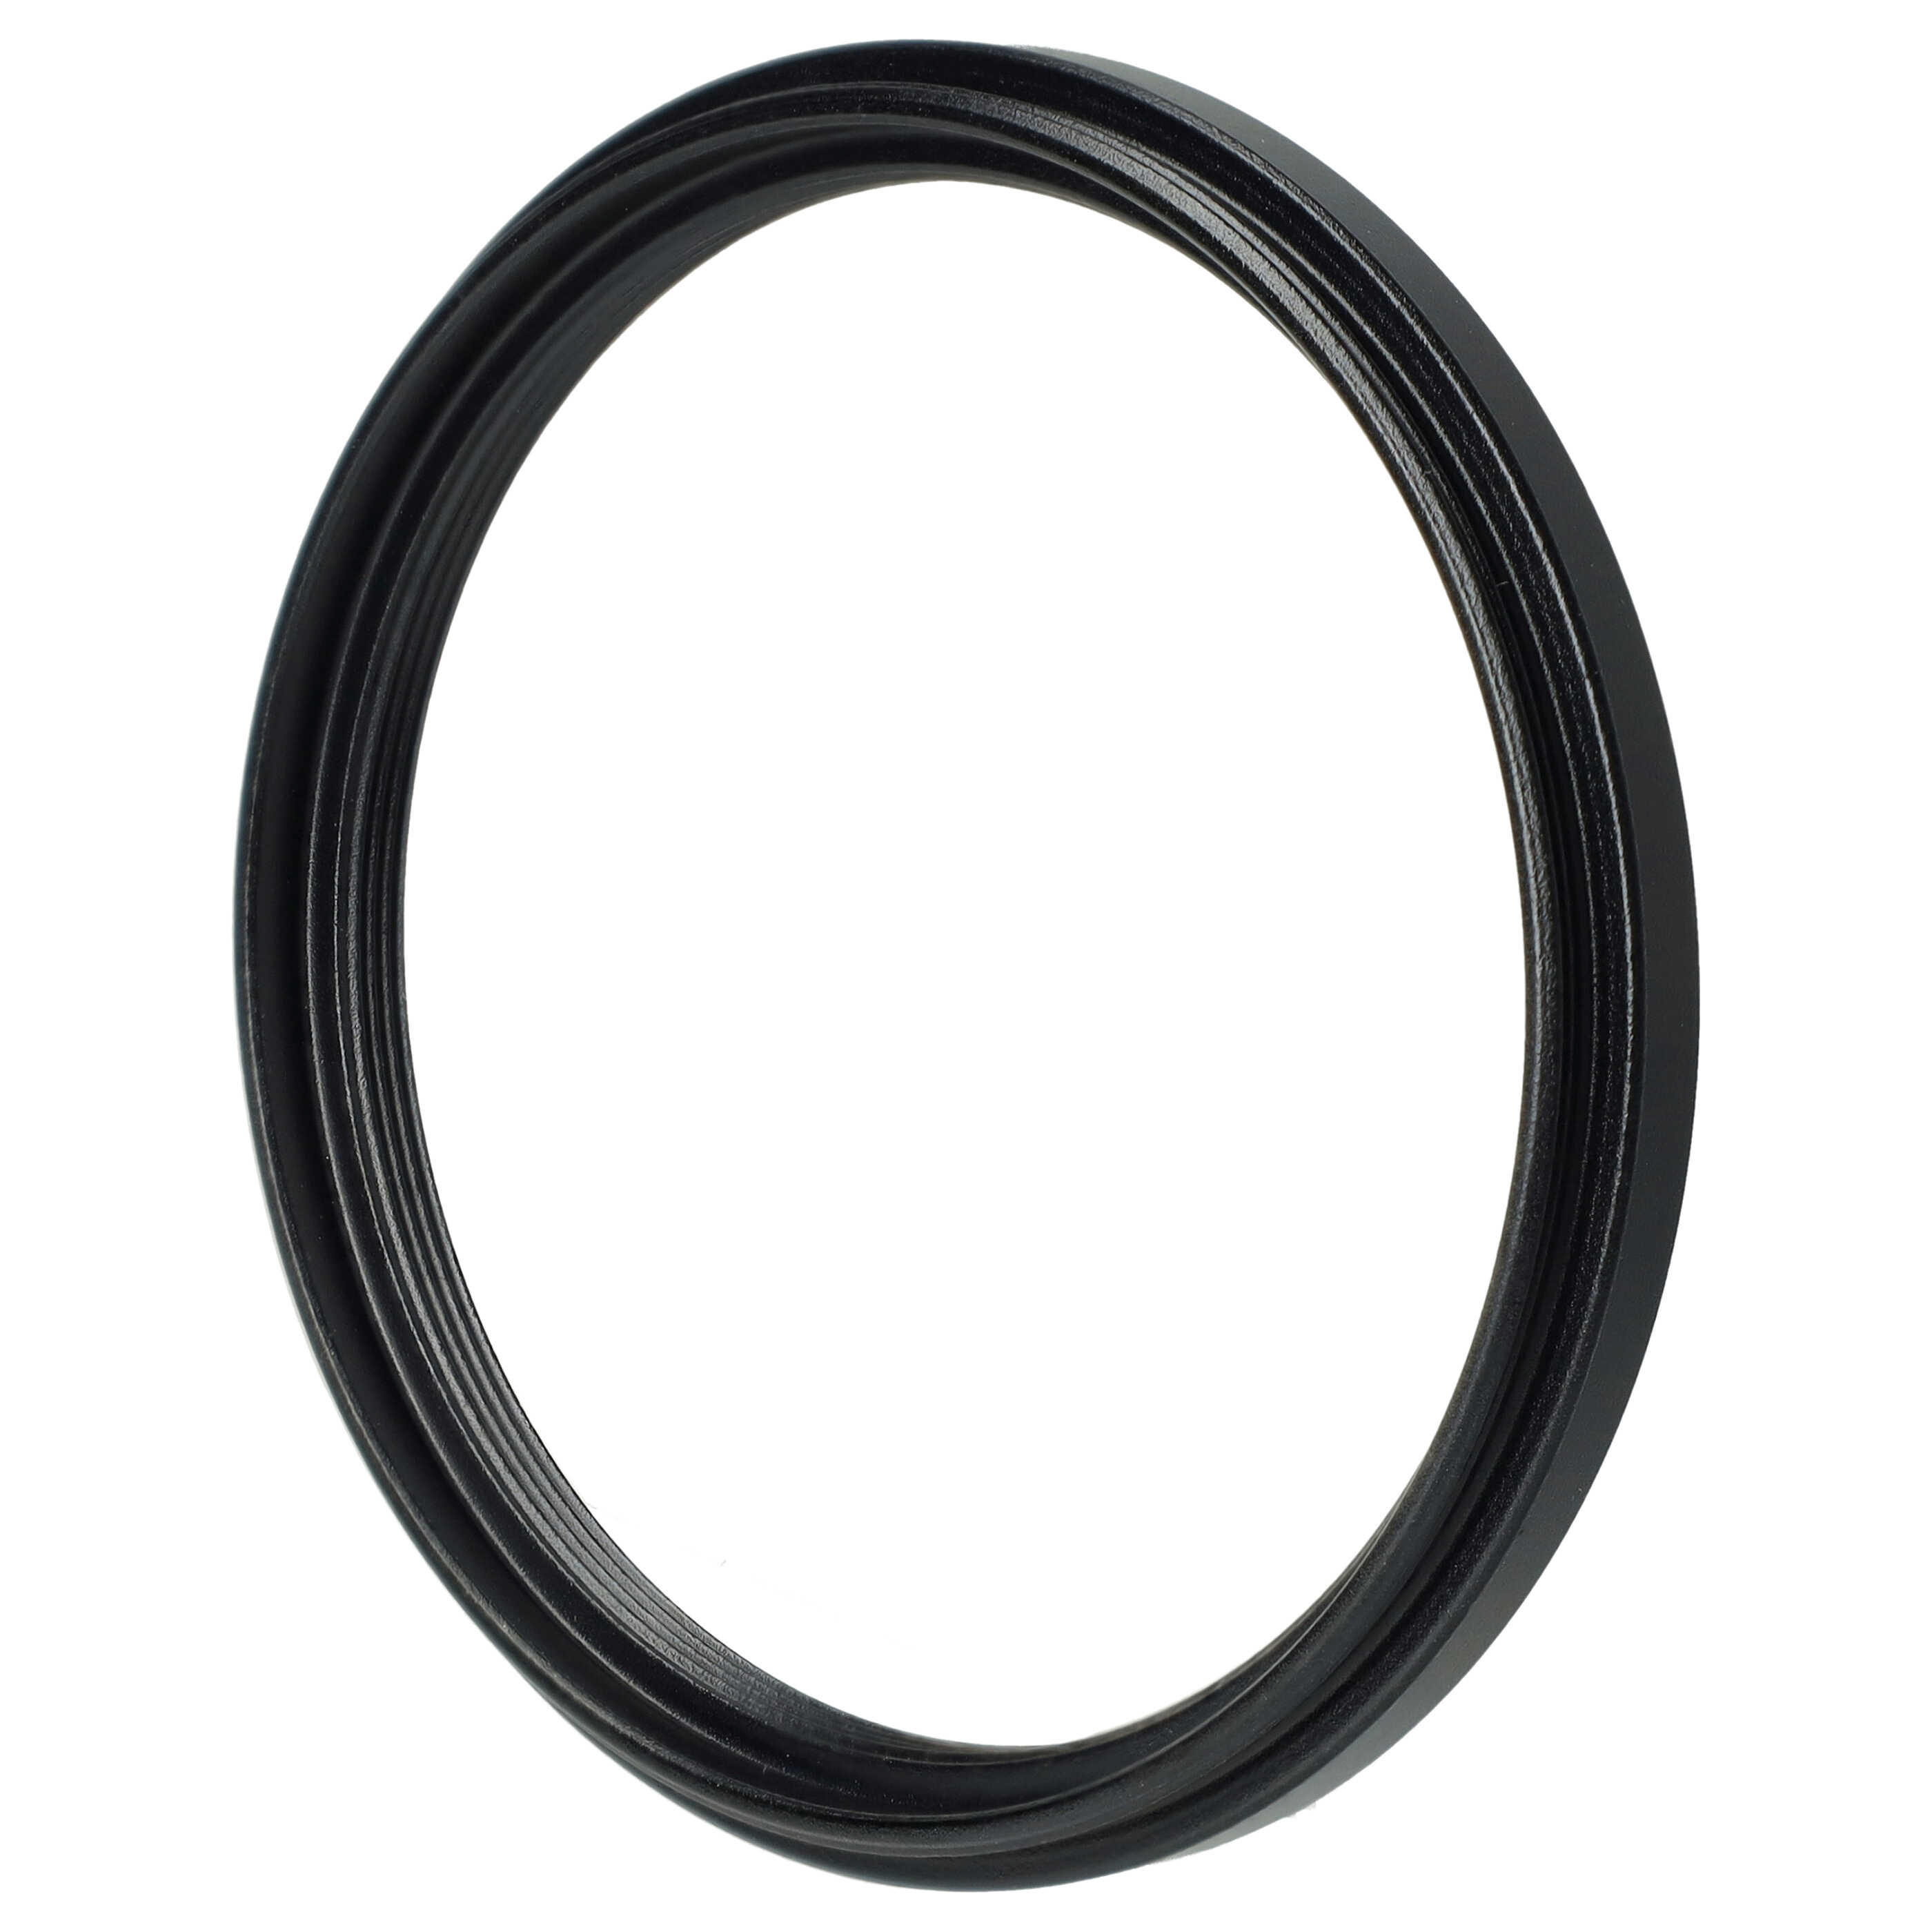 Redukcja filtrowa adapter Step-Down 58 mm - 52 mm pasująca do obiektywu - metal, czarny